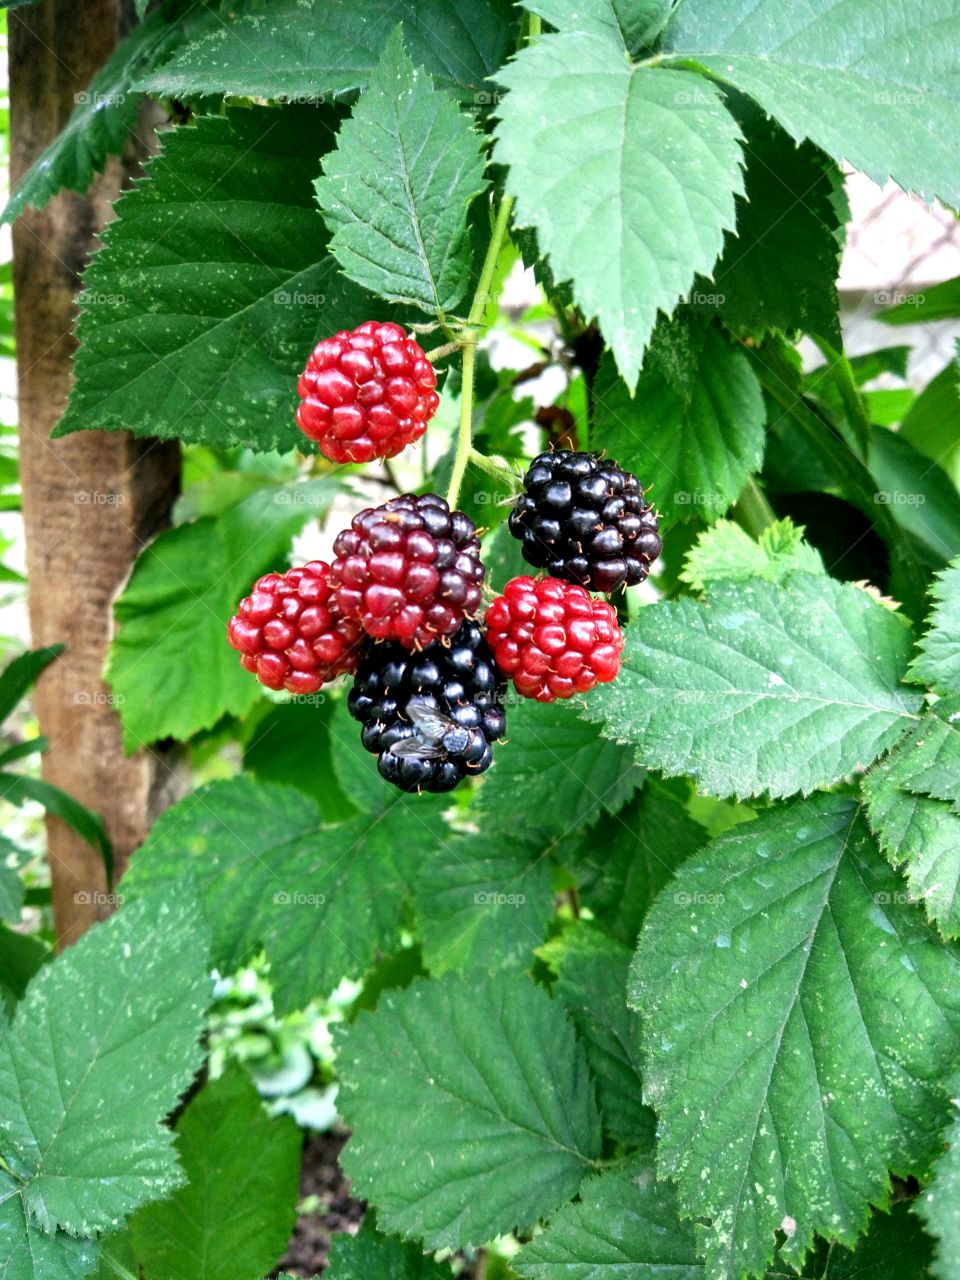 Fly on a blackberry. Blackberries in a garden